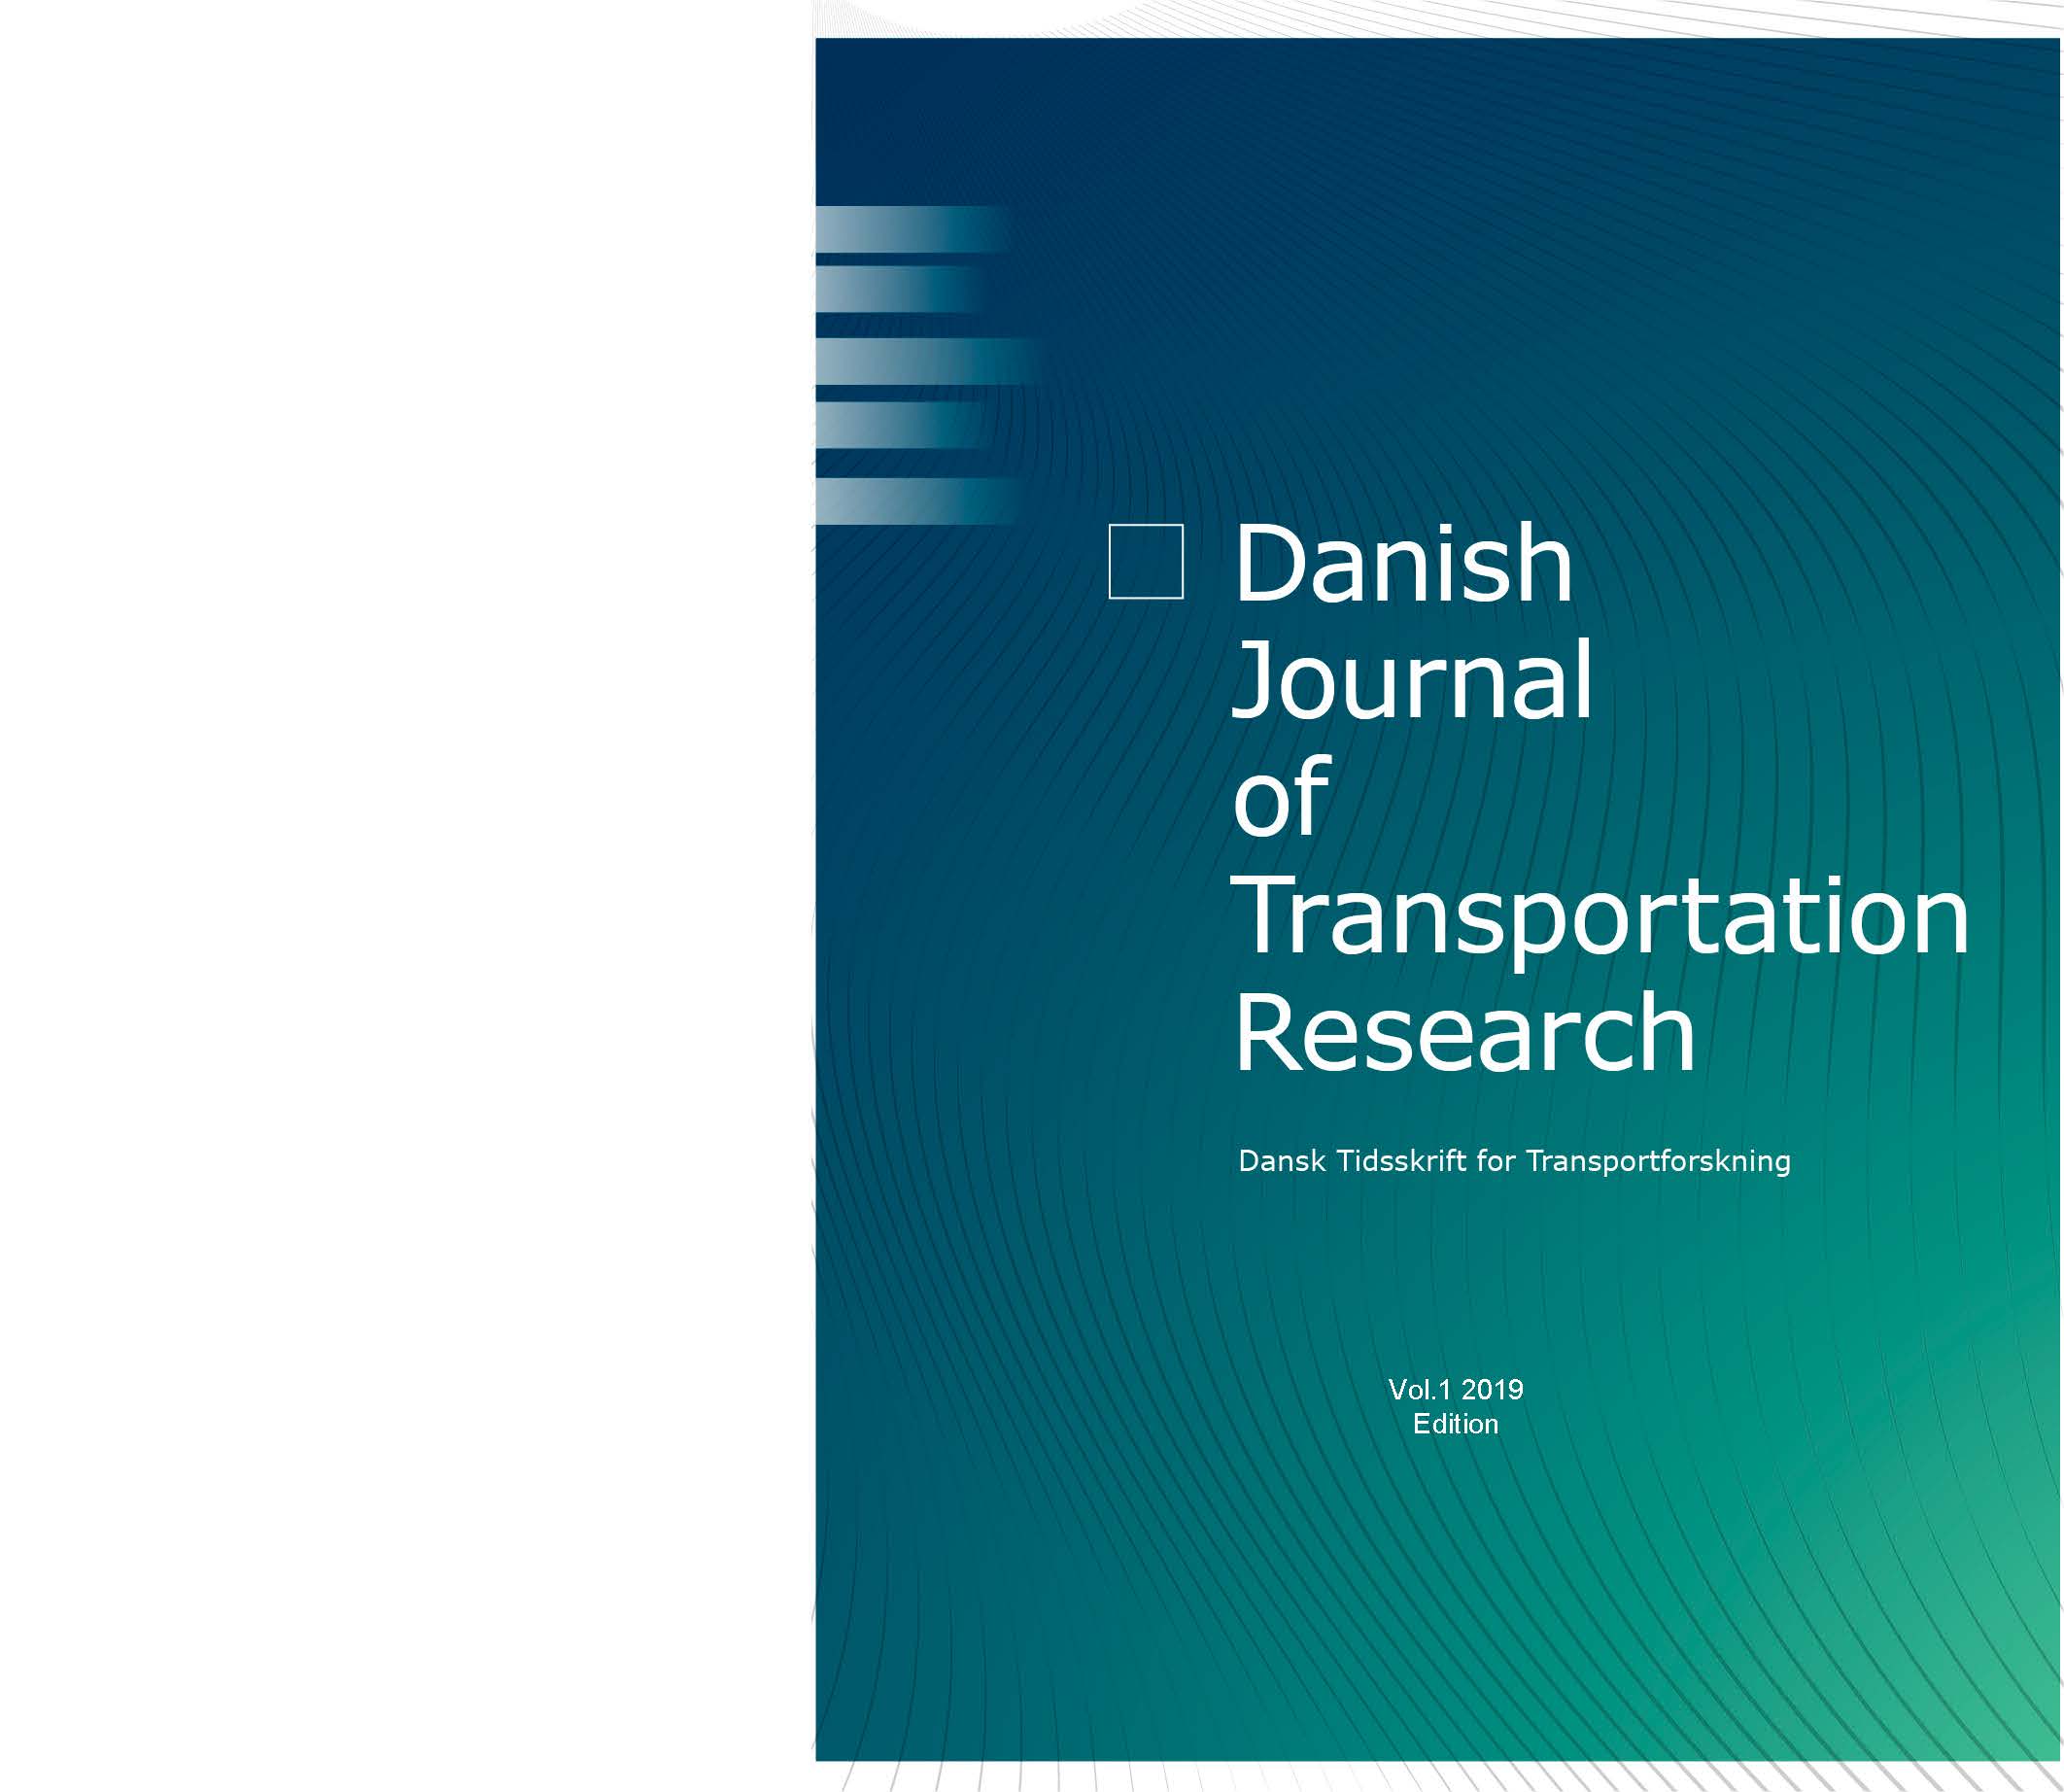 					Se Årg. 1 (2019): Danish Journal of Transportation Research - Dansk tidsskrift for transportforskning
				